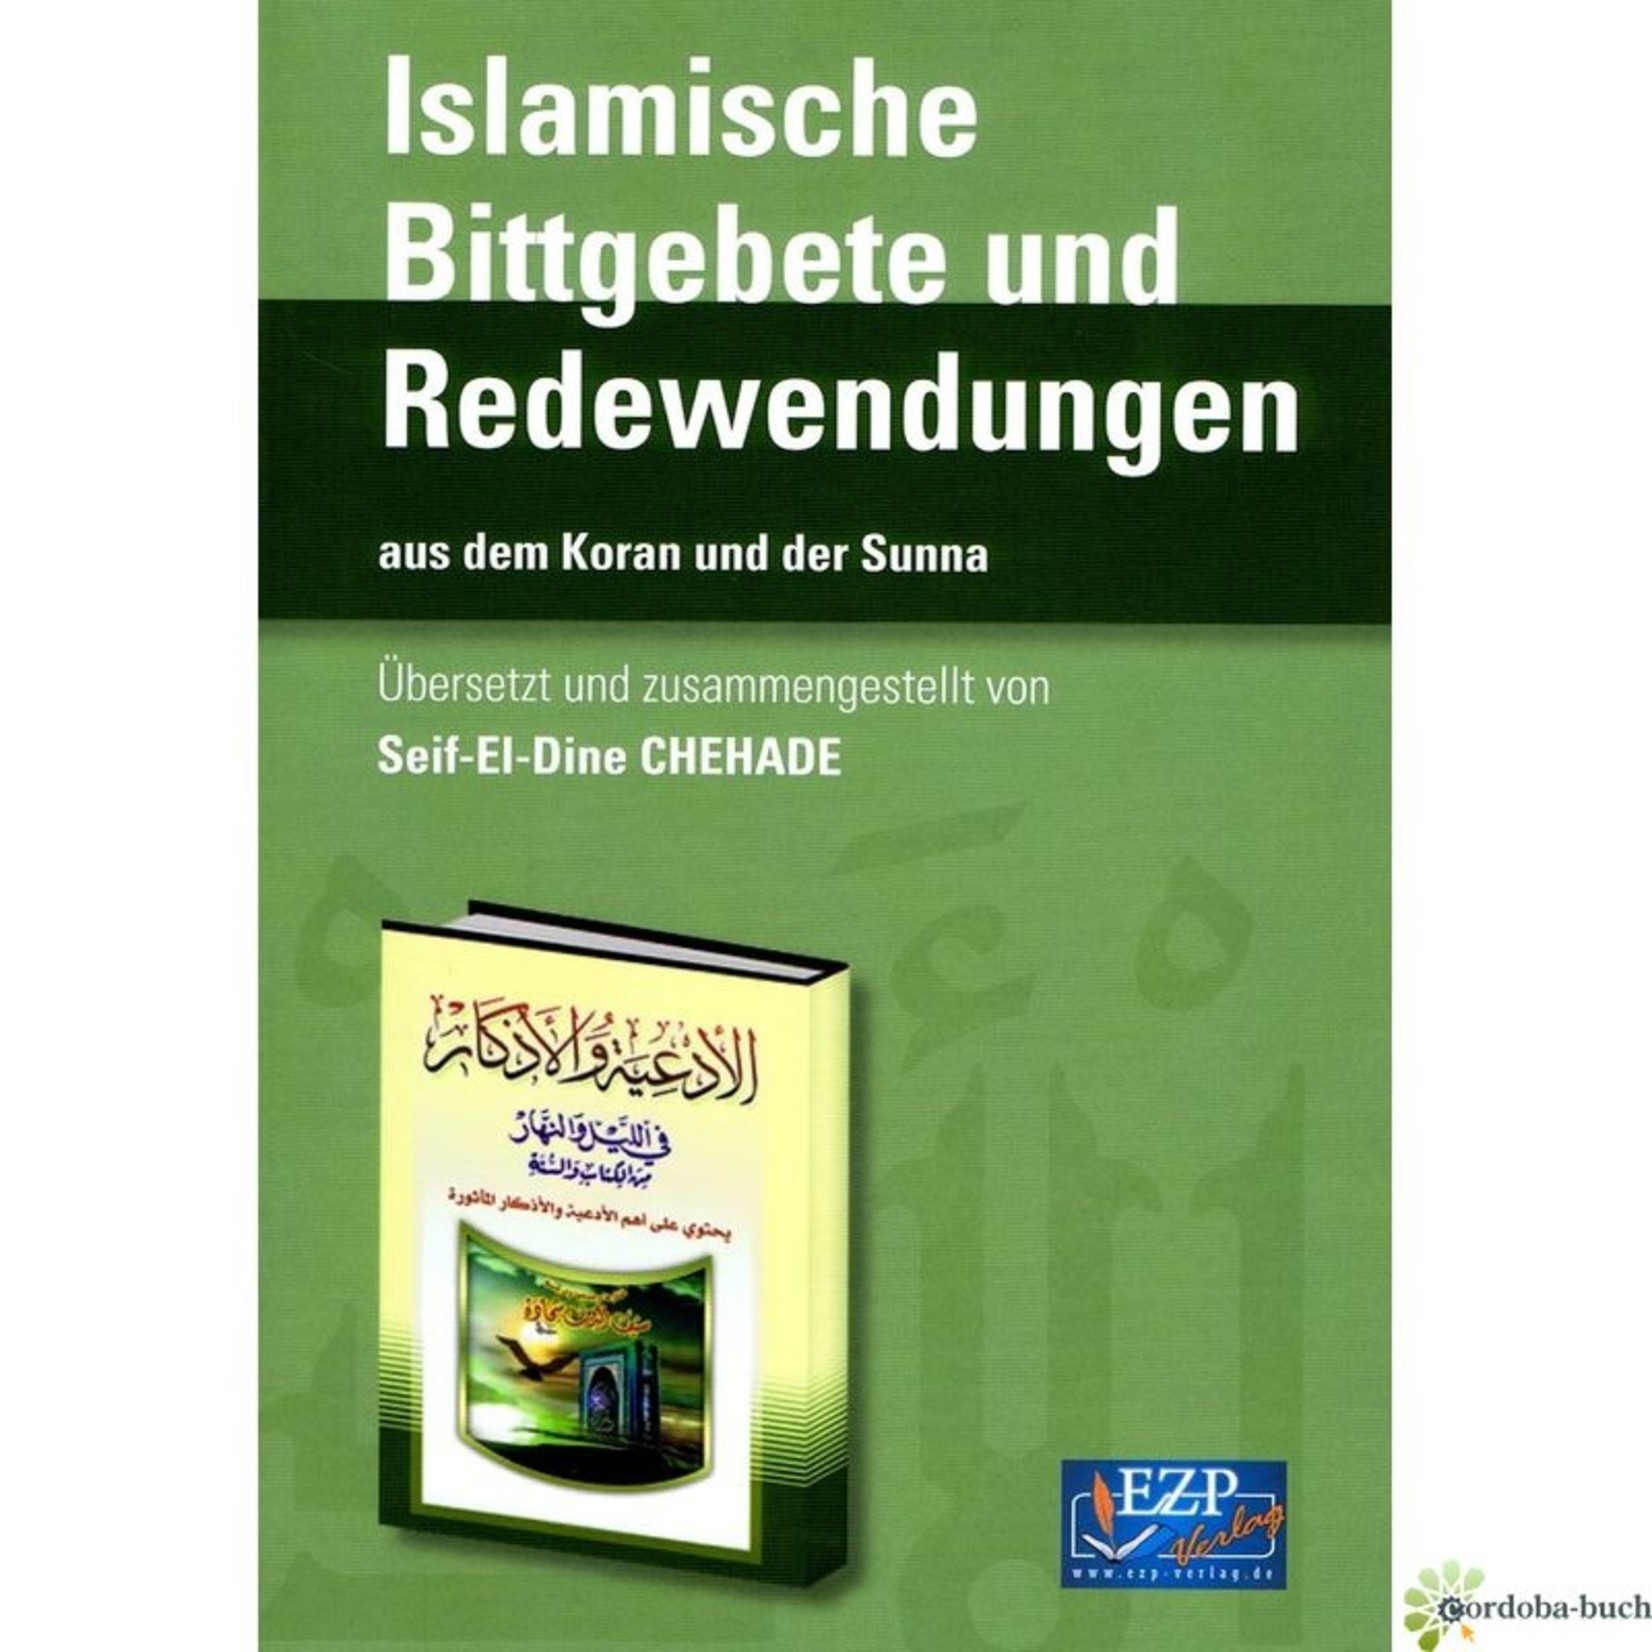 Islamische Bittgebete und Redewendungen Duaa